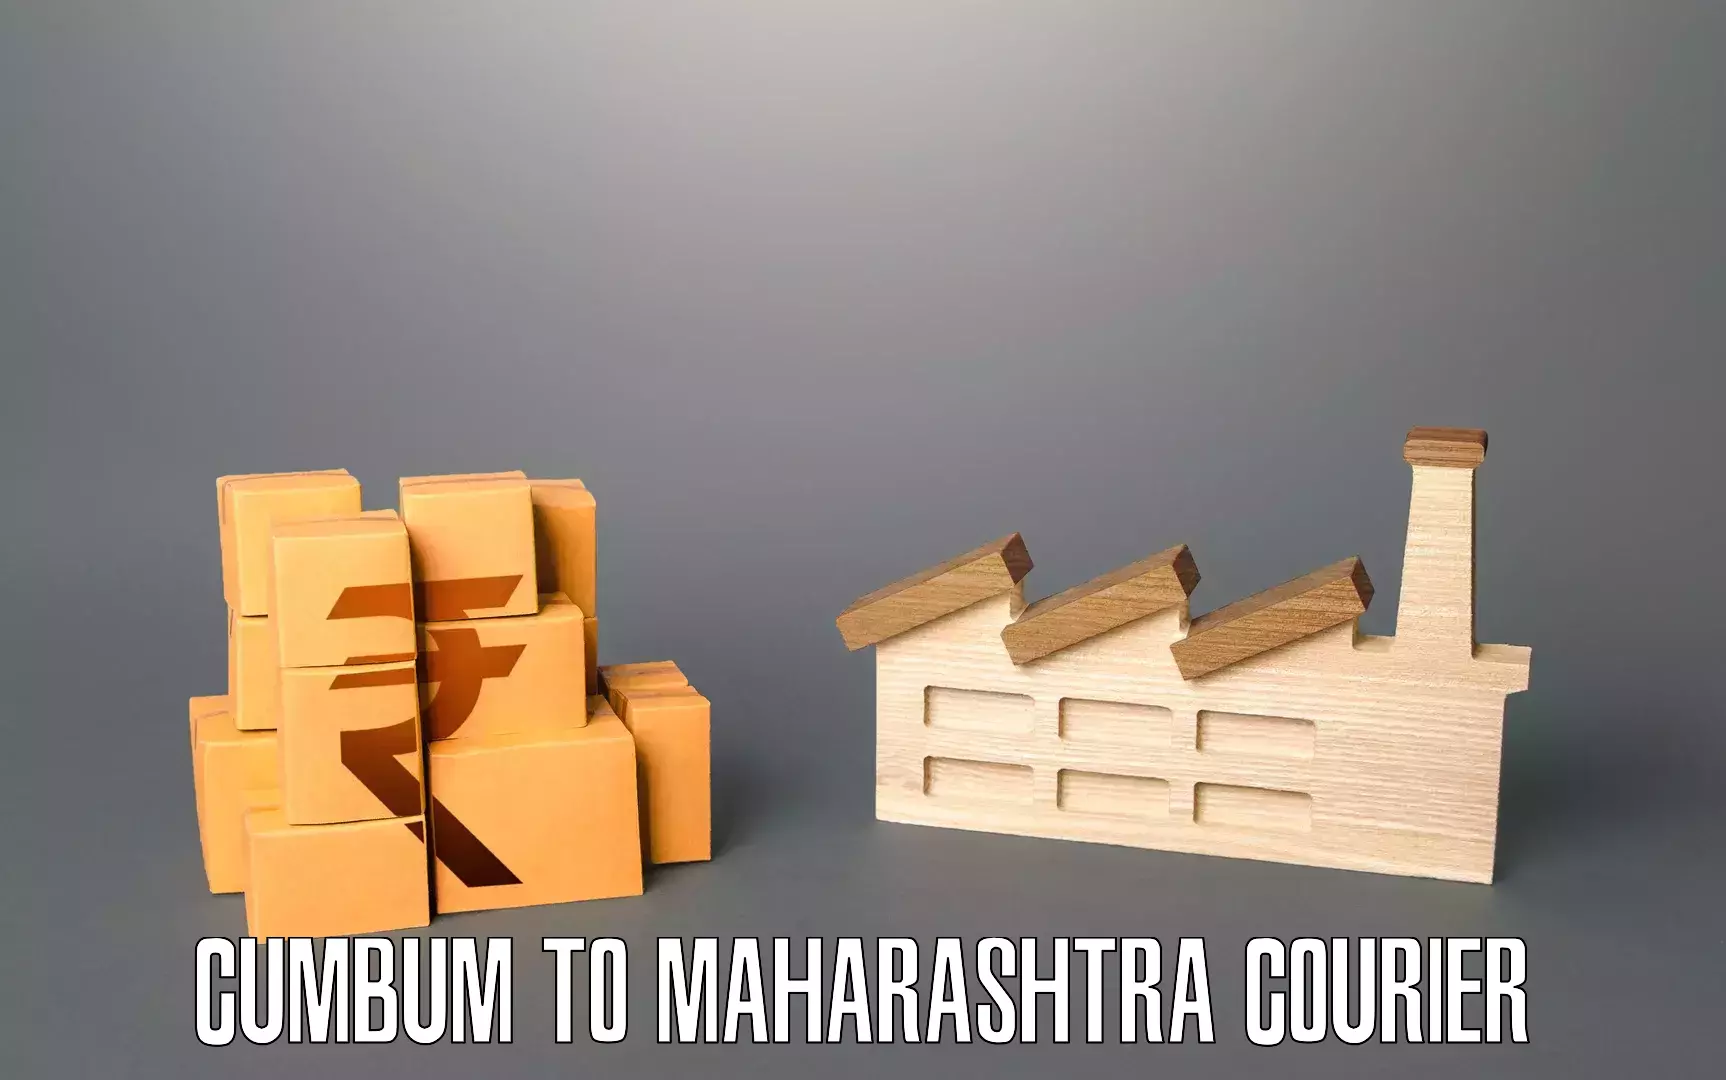 Efficient moving company Cumbum to Maharashtra